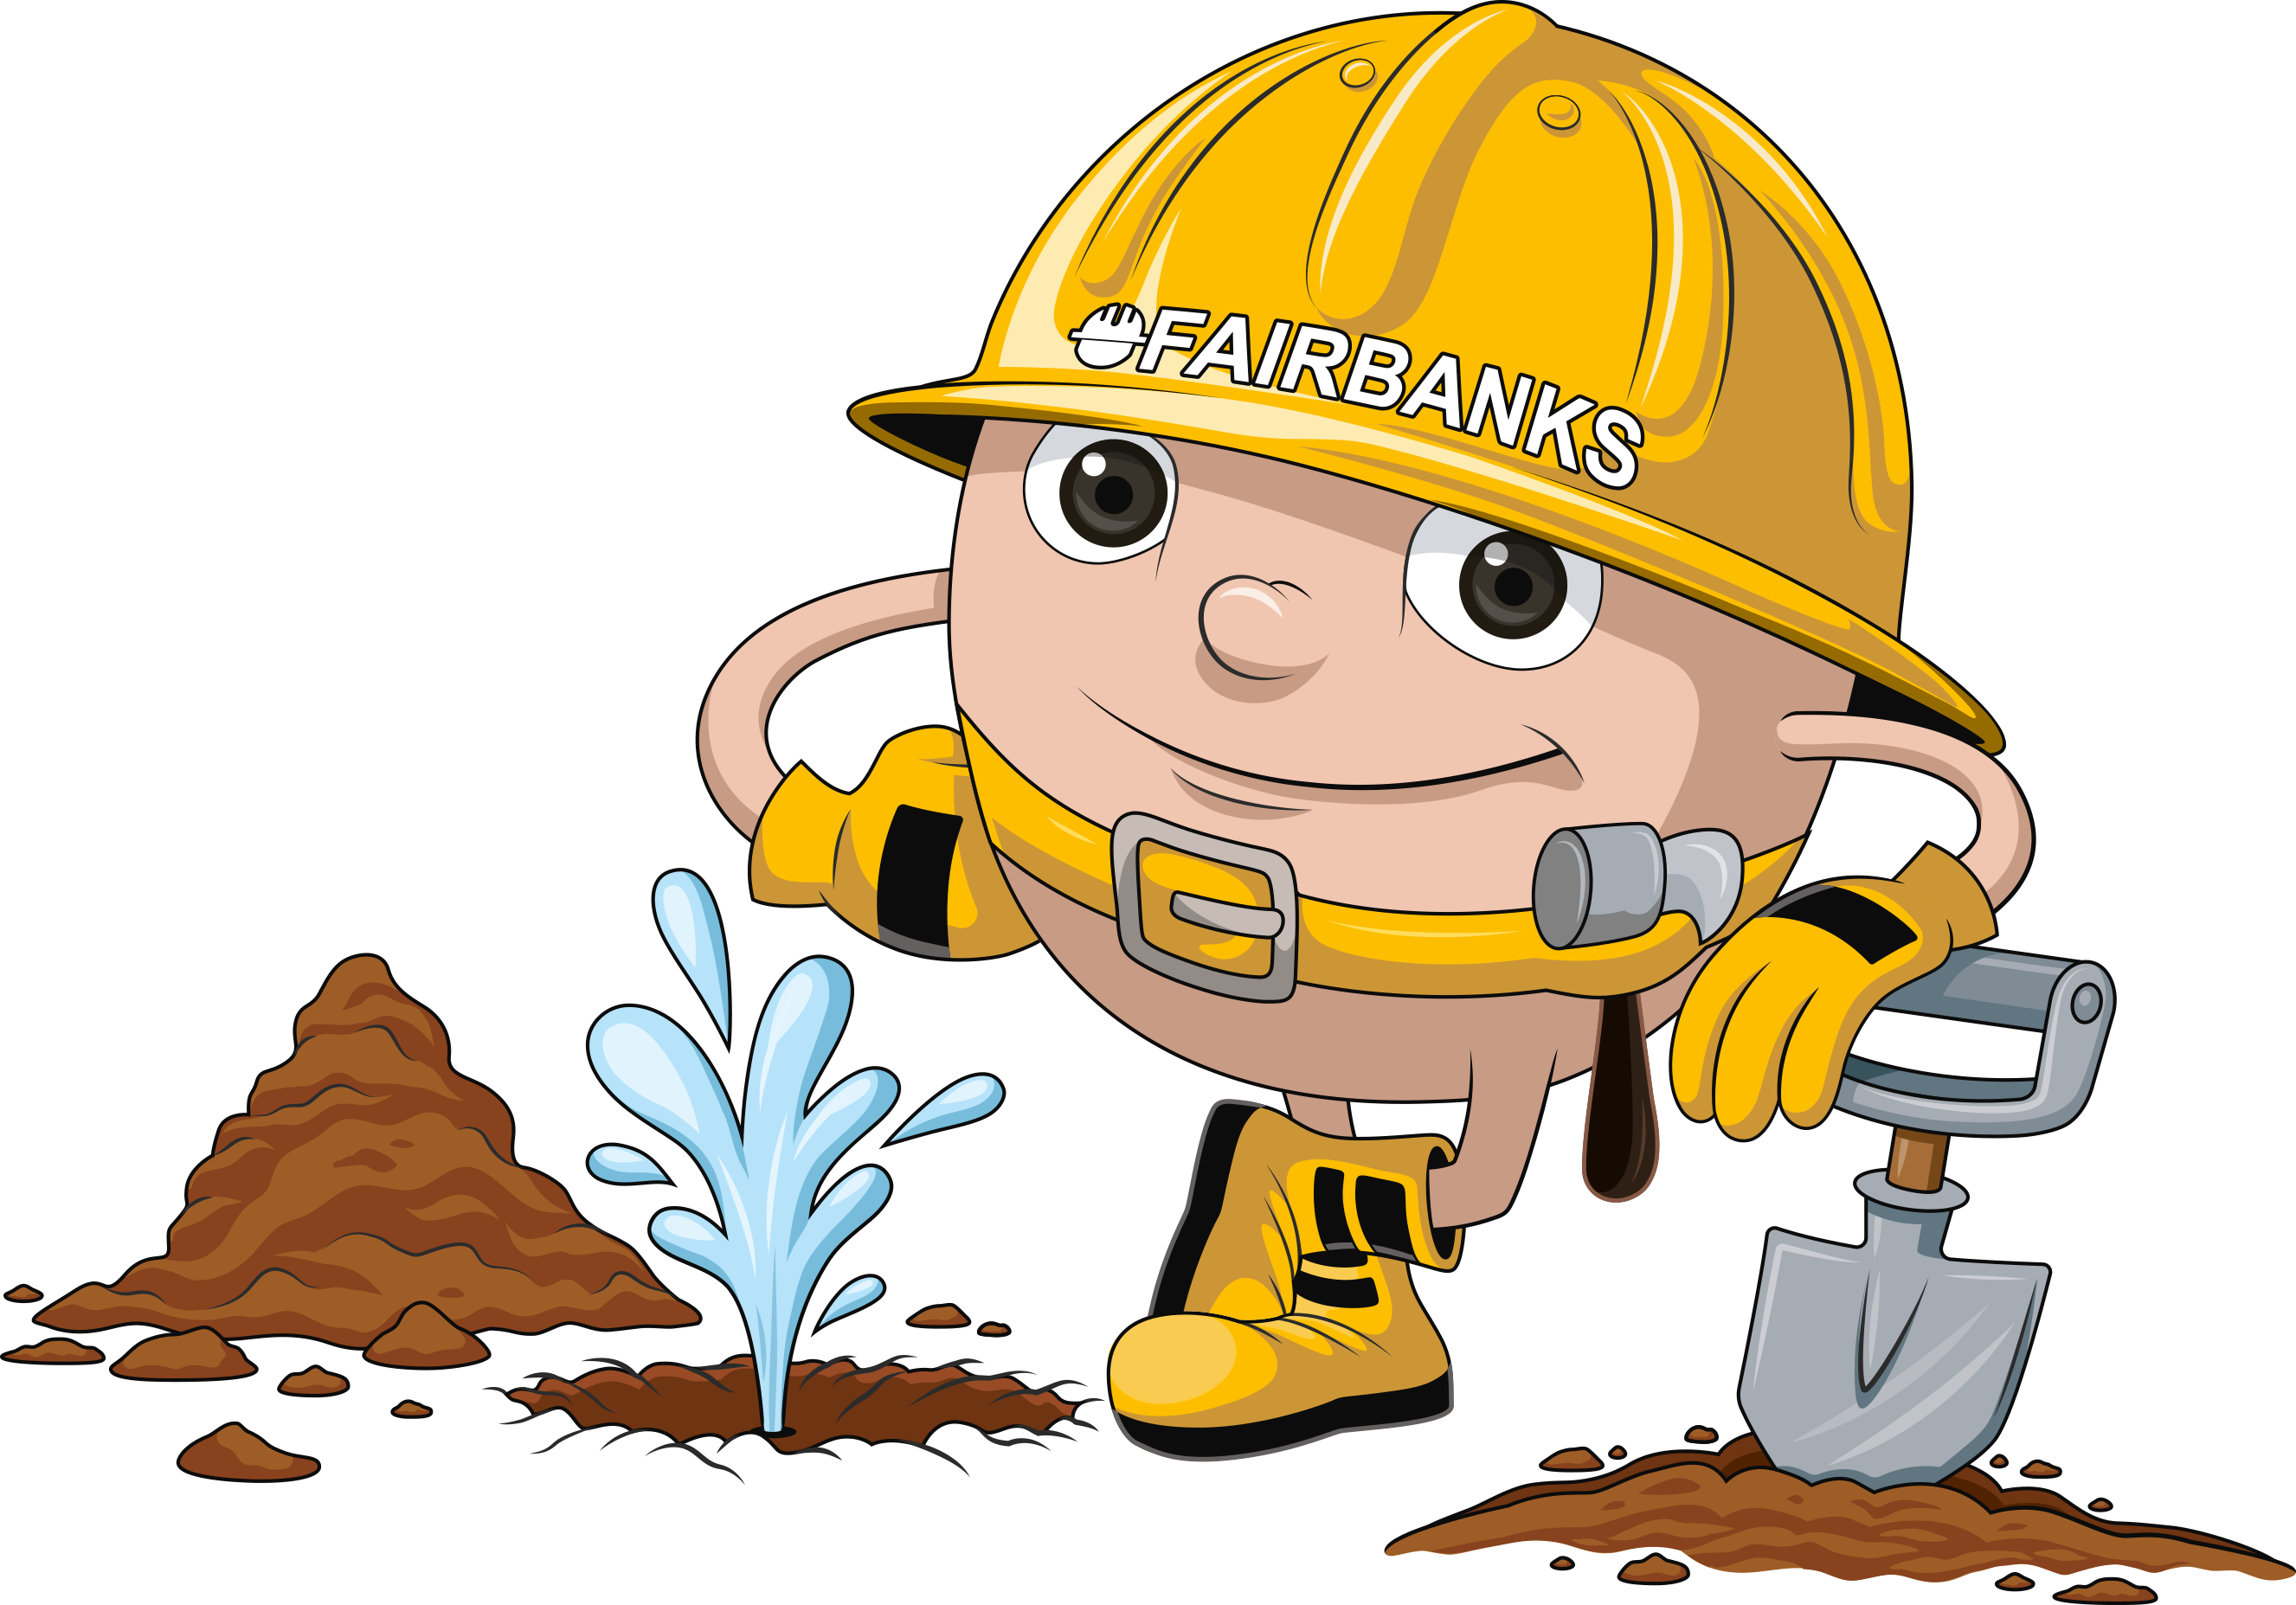 Excavators General Liability Mascot